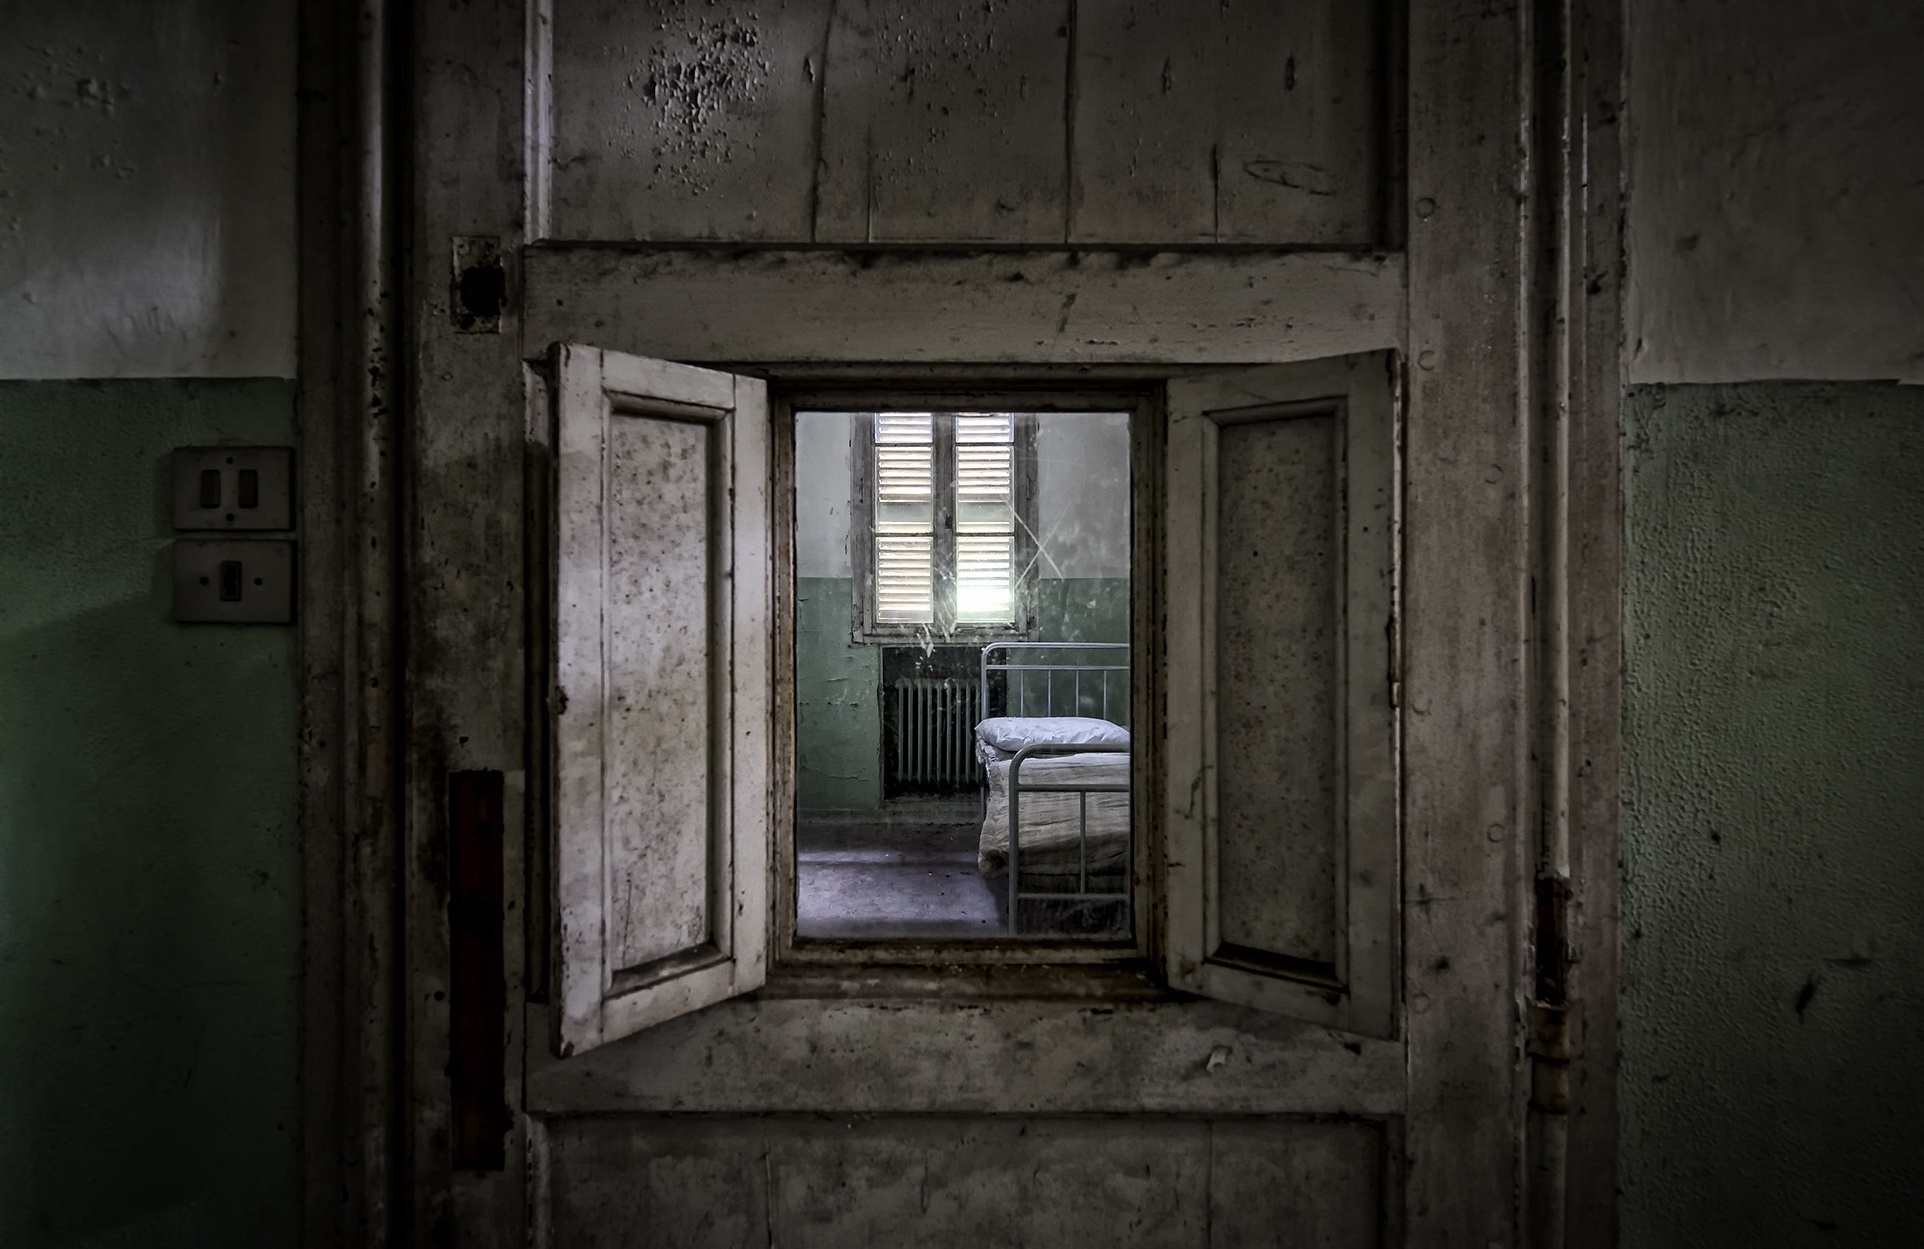 General 1924x1249 indoors building bed old prison hospital